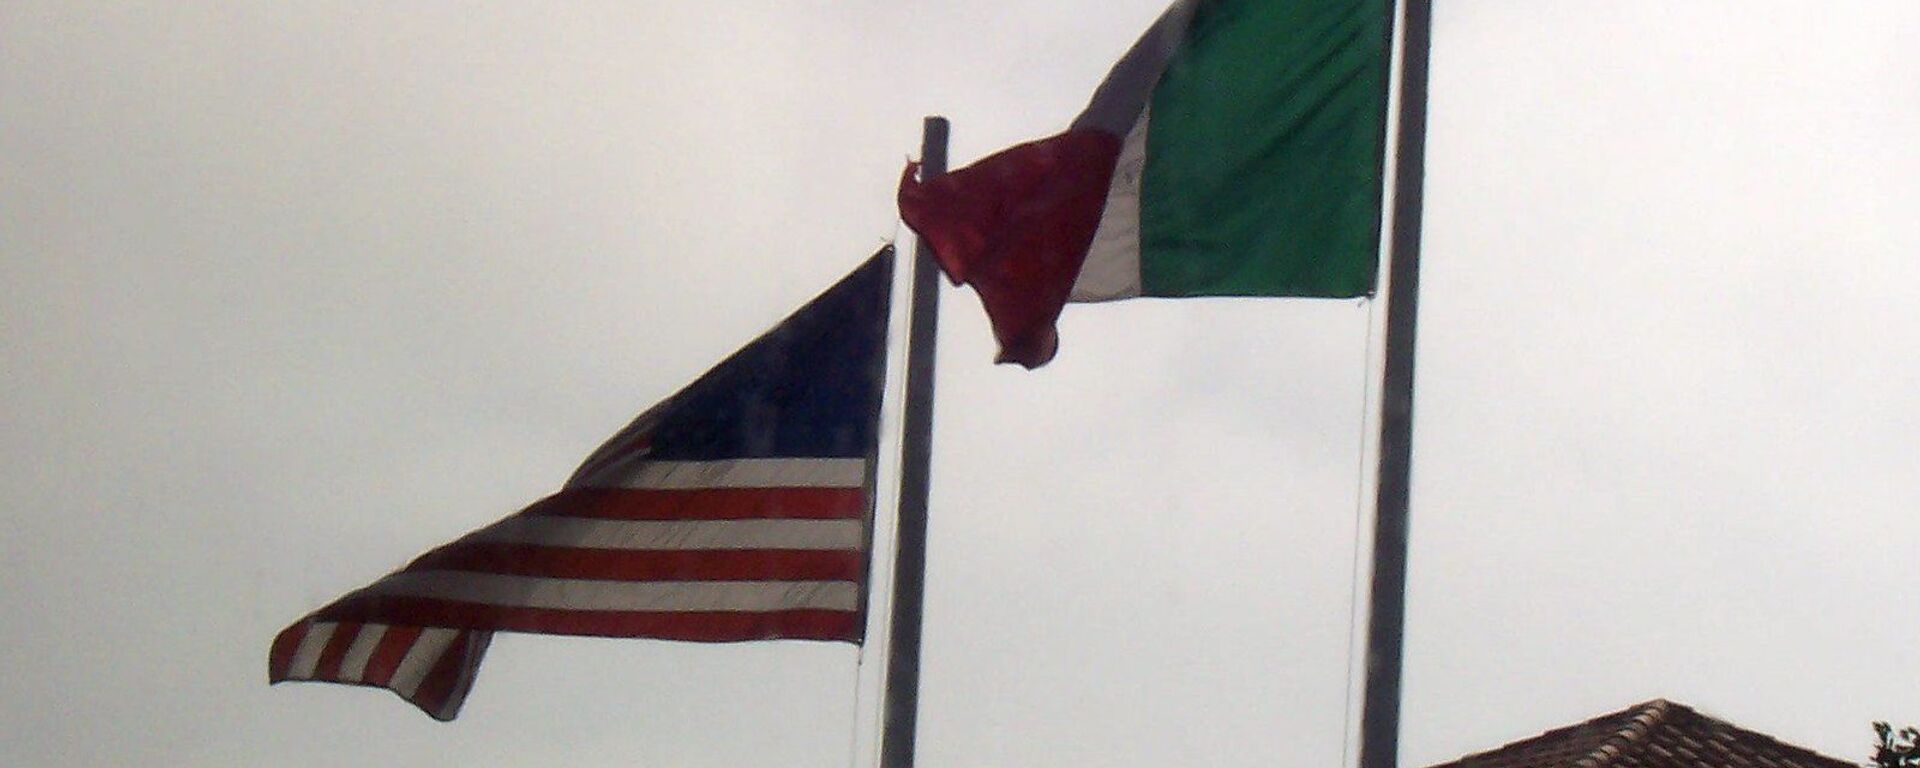 Banderas de EEUU y México - Sputnik Mundo, 1920, 20.05.2021